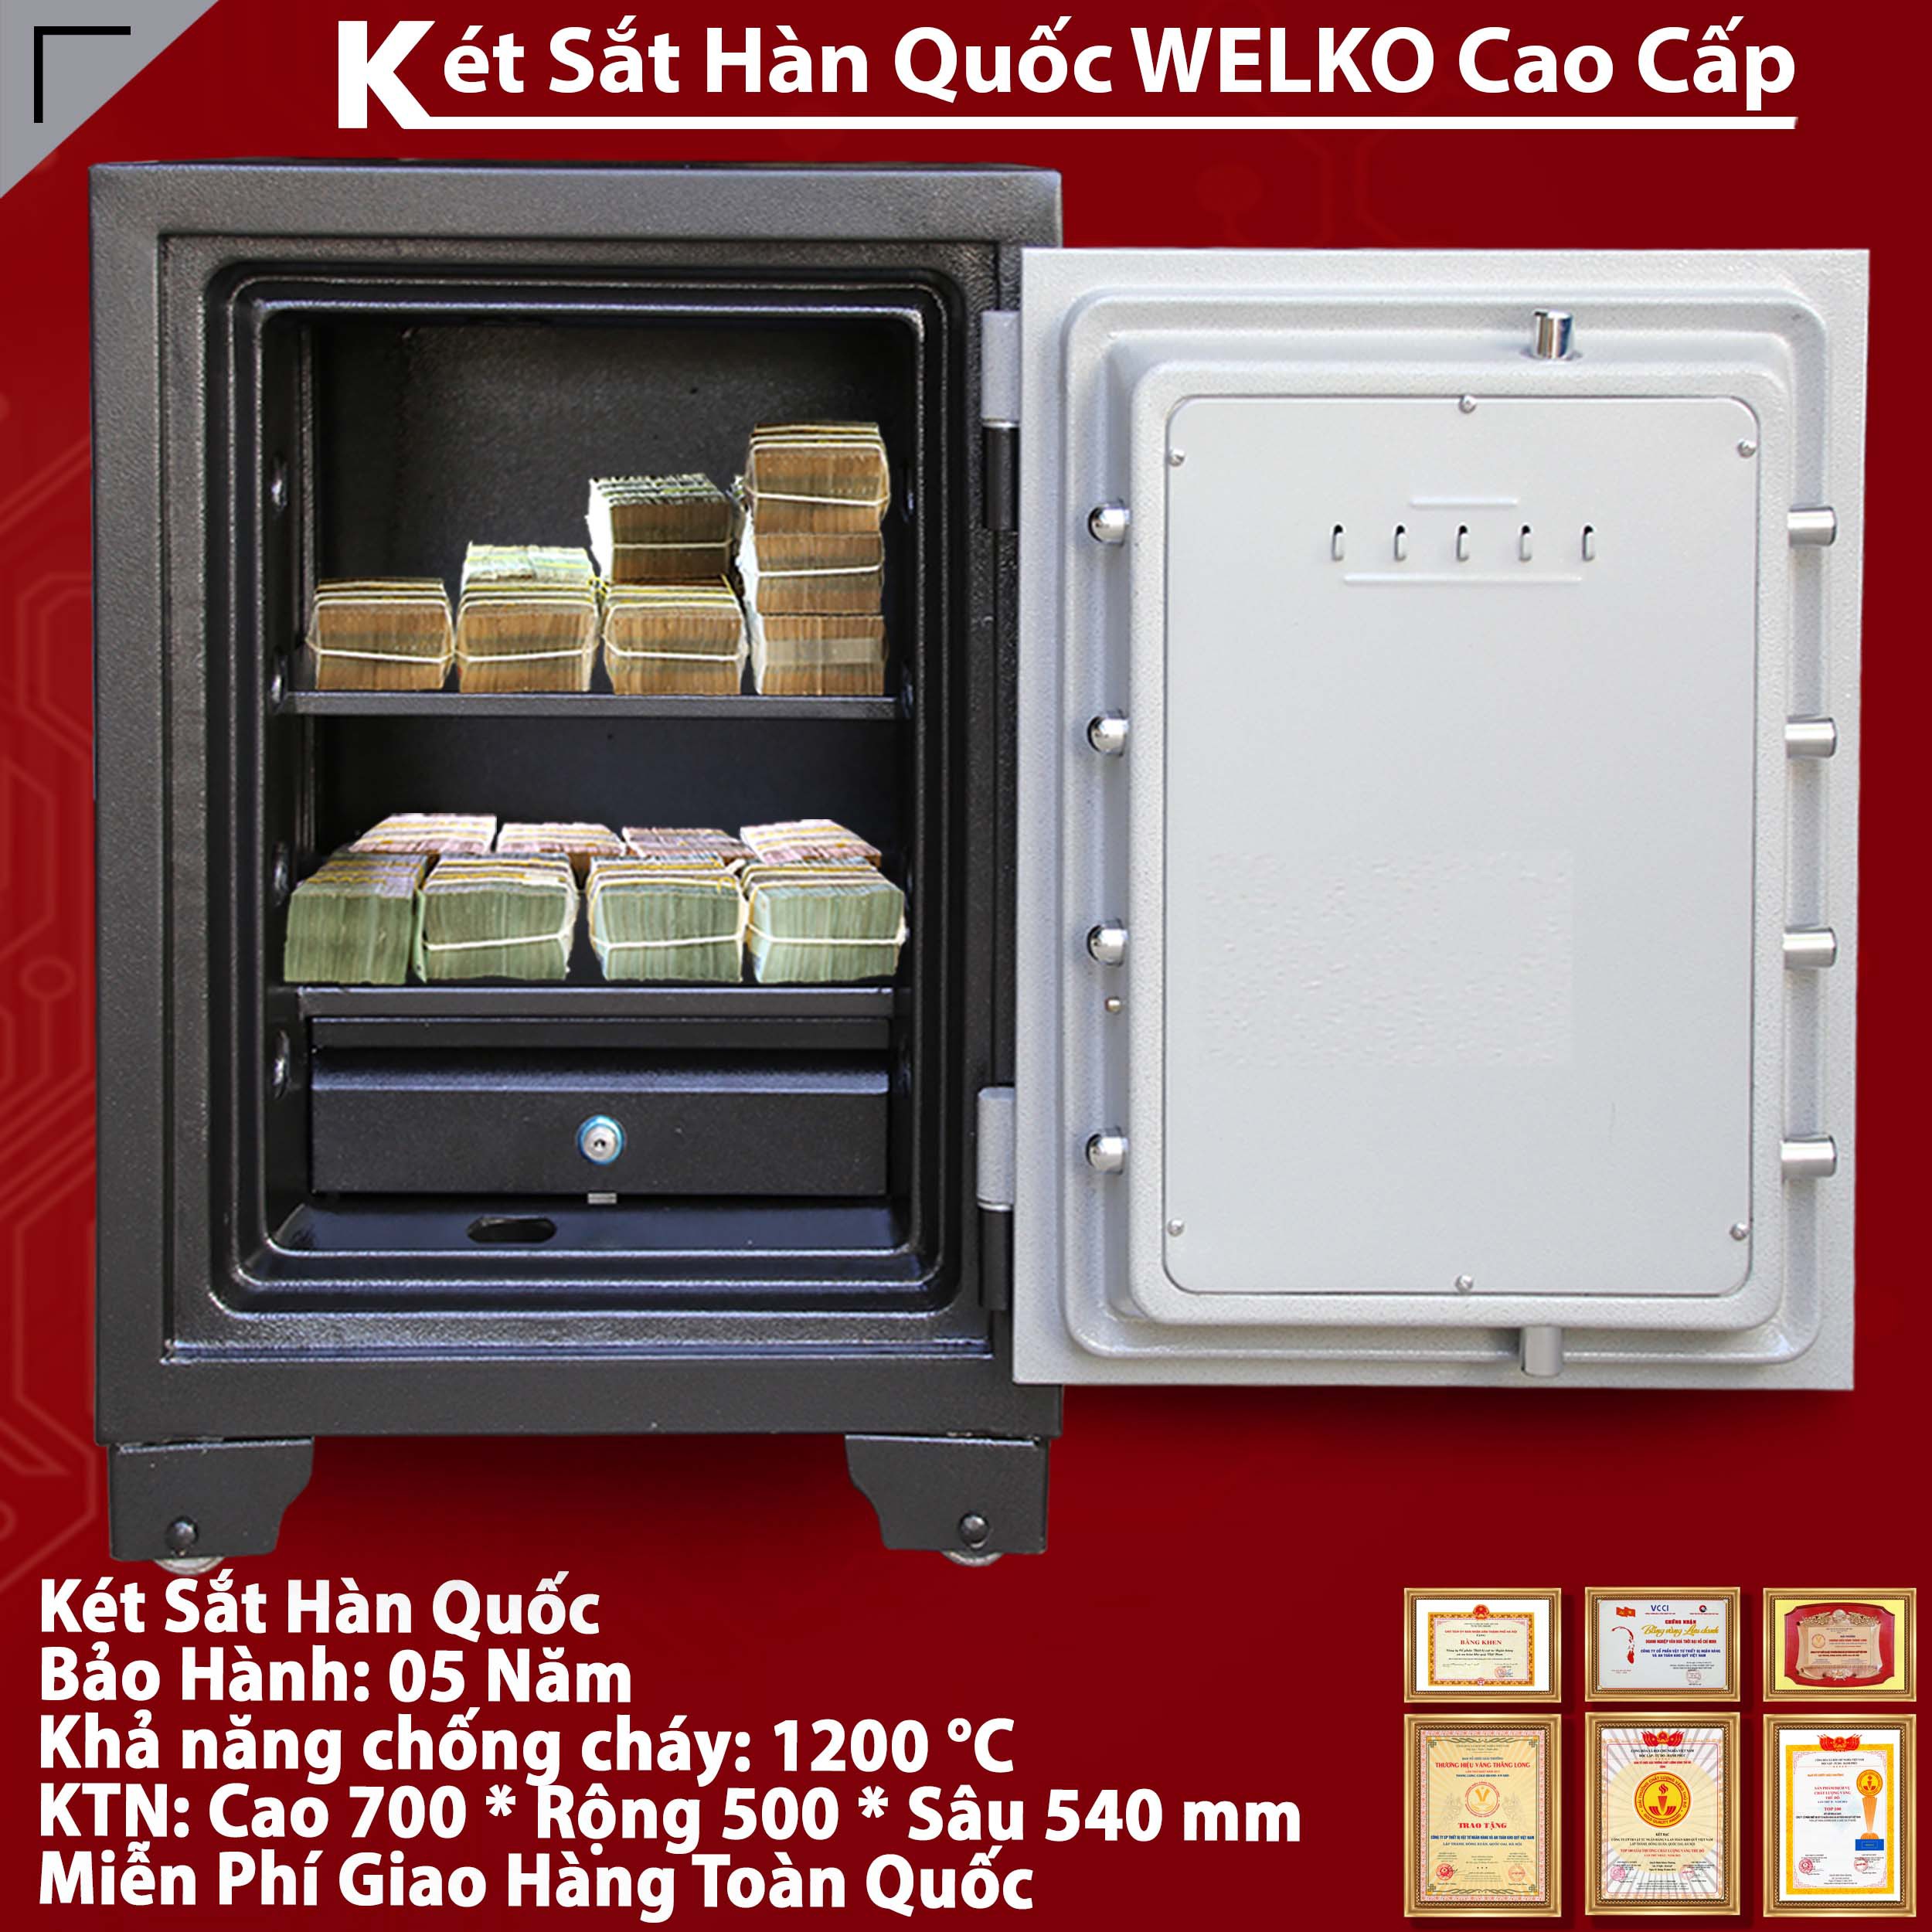 cửa hàng Két Sắt Bảo Mật cung cấp két sắt giá rẻ chất lượng cao an toàn uy tín